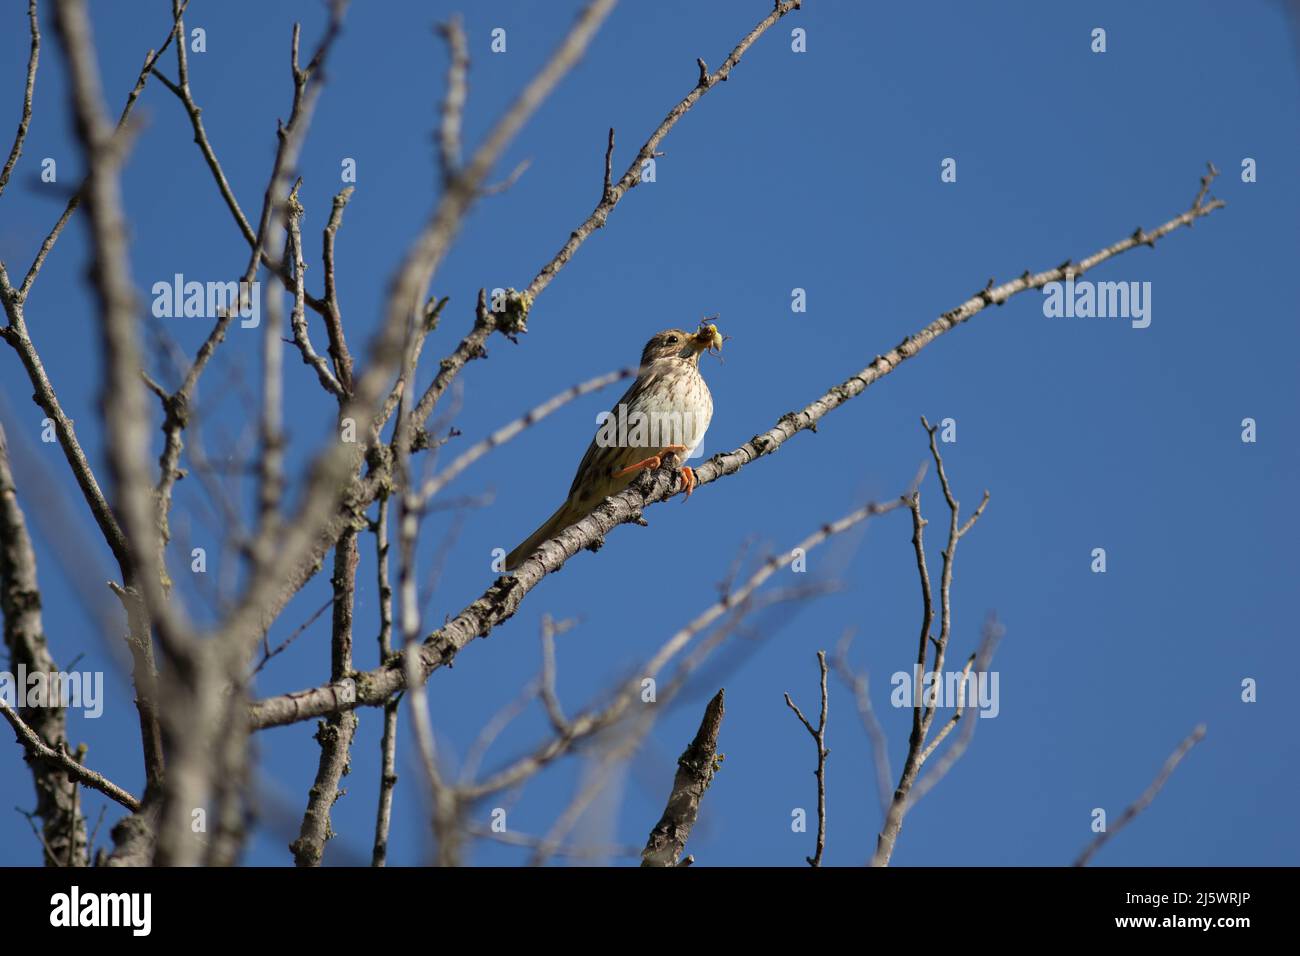 un oiseau avec un insecte dans le bec sur un arbre Stockfoto